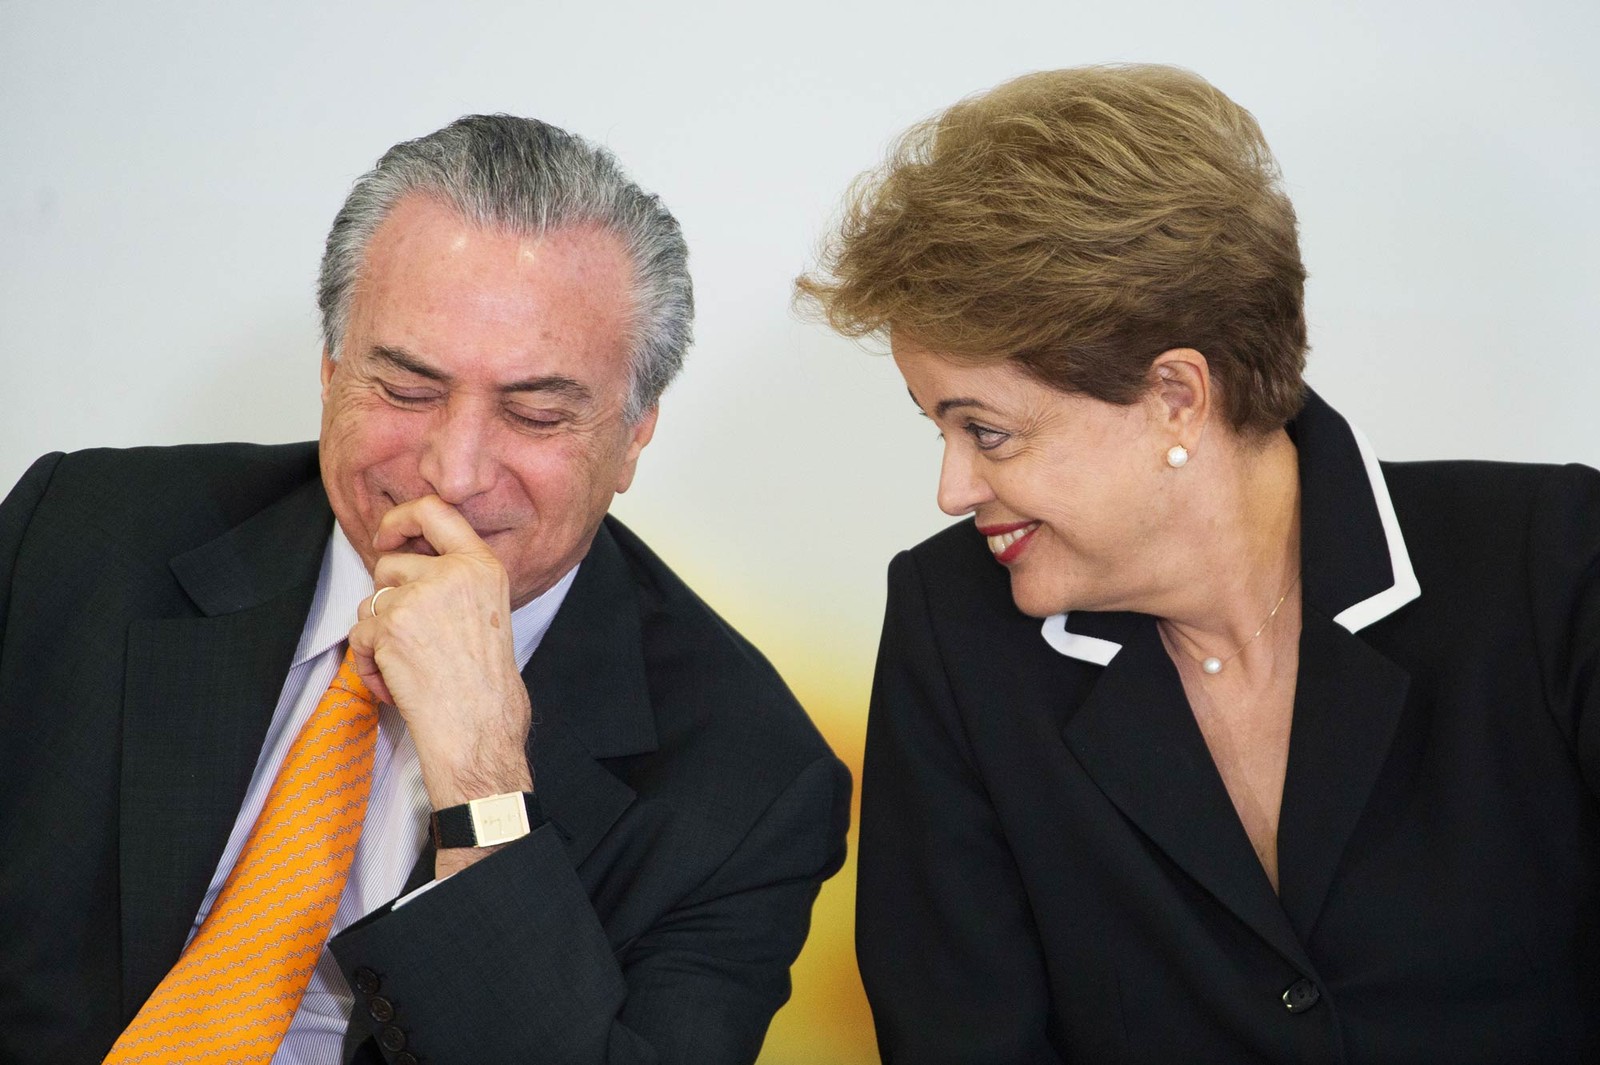 Michel Temer e Dilma Rousseff, durante cerimônia em junho de 2015 (Foto: Marcelo Camargo/Agência Brasil)